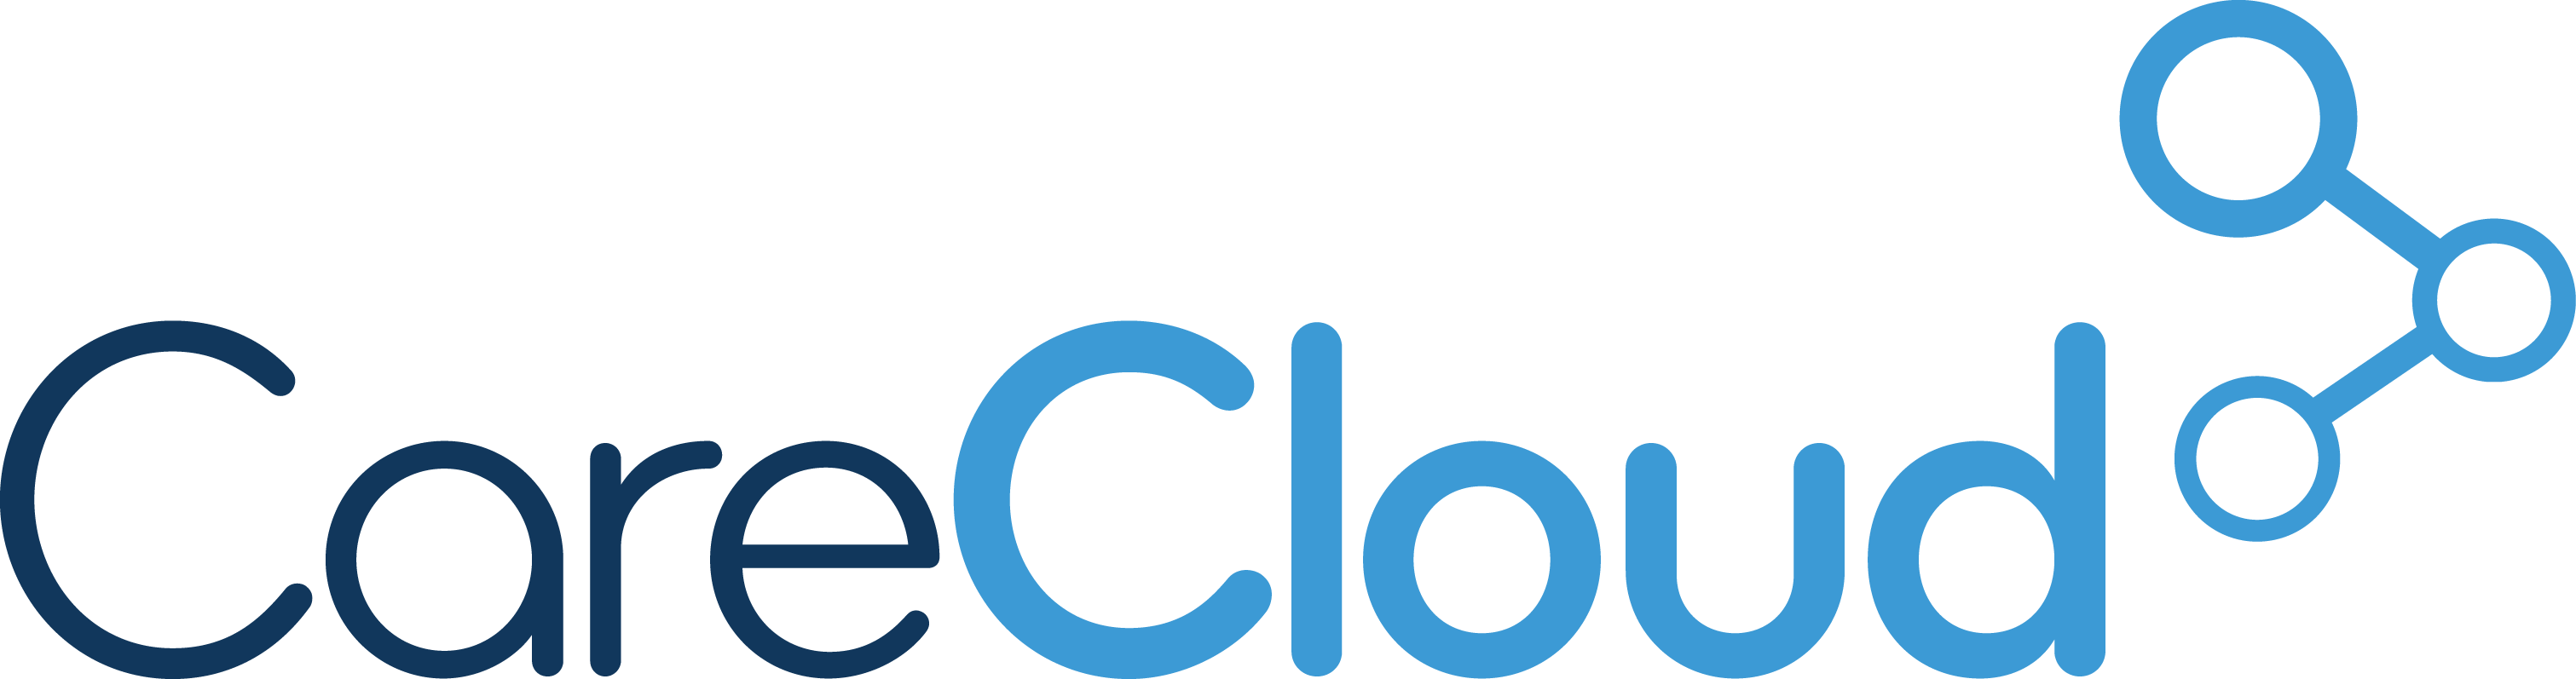 Carecloud Logo